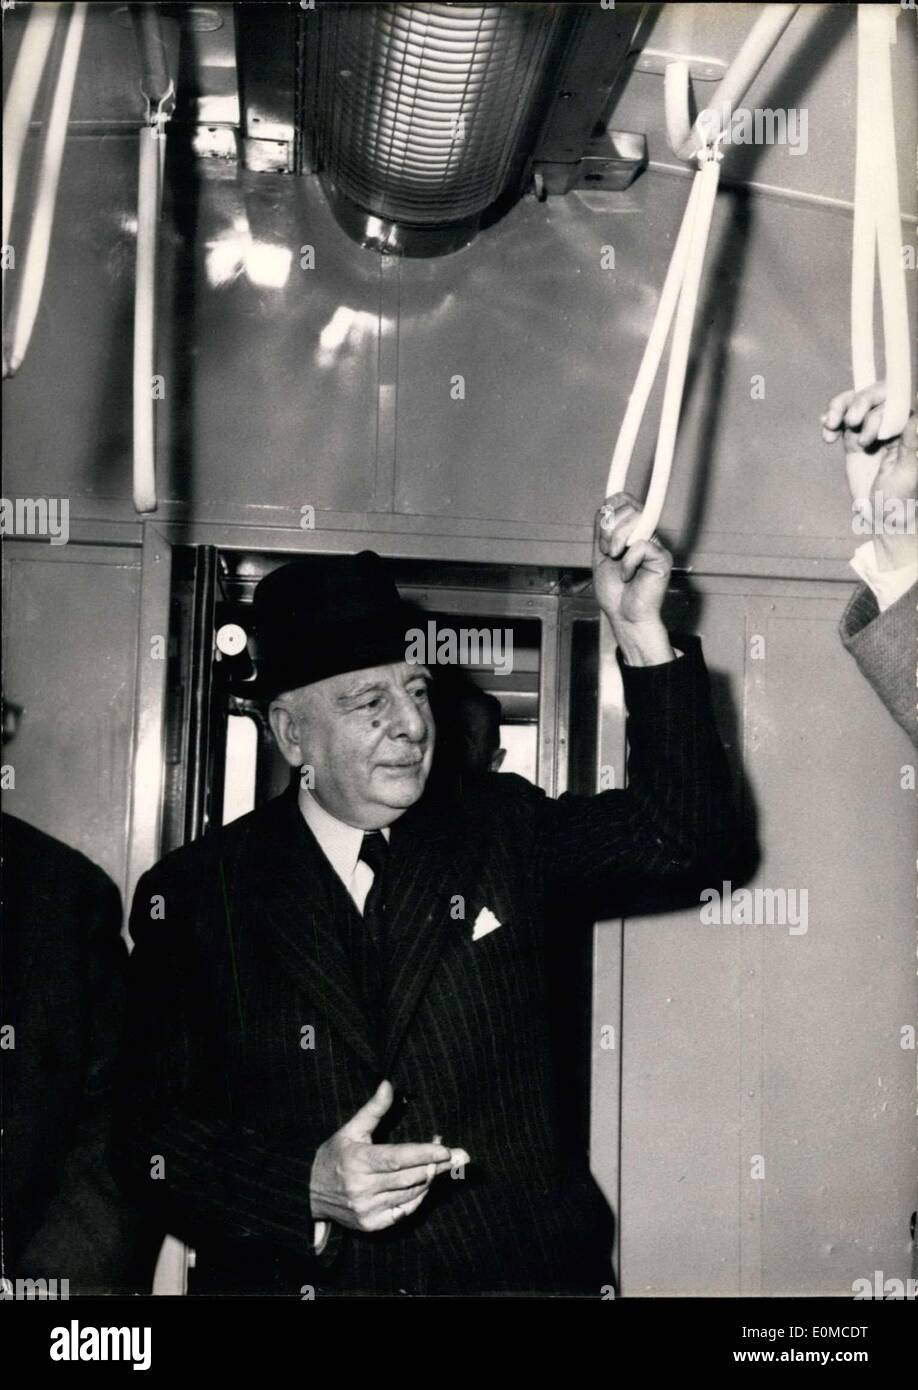 11 agosto 1954 - Il Ministro dei Lavori pubblici, il sig. Chastellain, e altri funzionari del governo, ha partecipato alla inaugurazione di uno dei nuovi treni della metropolitana sulla linea Paris-Melun presso la stazione di Lione a Parigi. Ecco una foto del sig. Chastellain in una delle nuove vetture della metropolitana, tenendo su di un lato rampa. Foto Stock